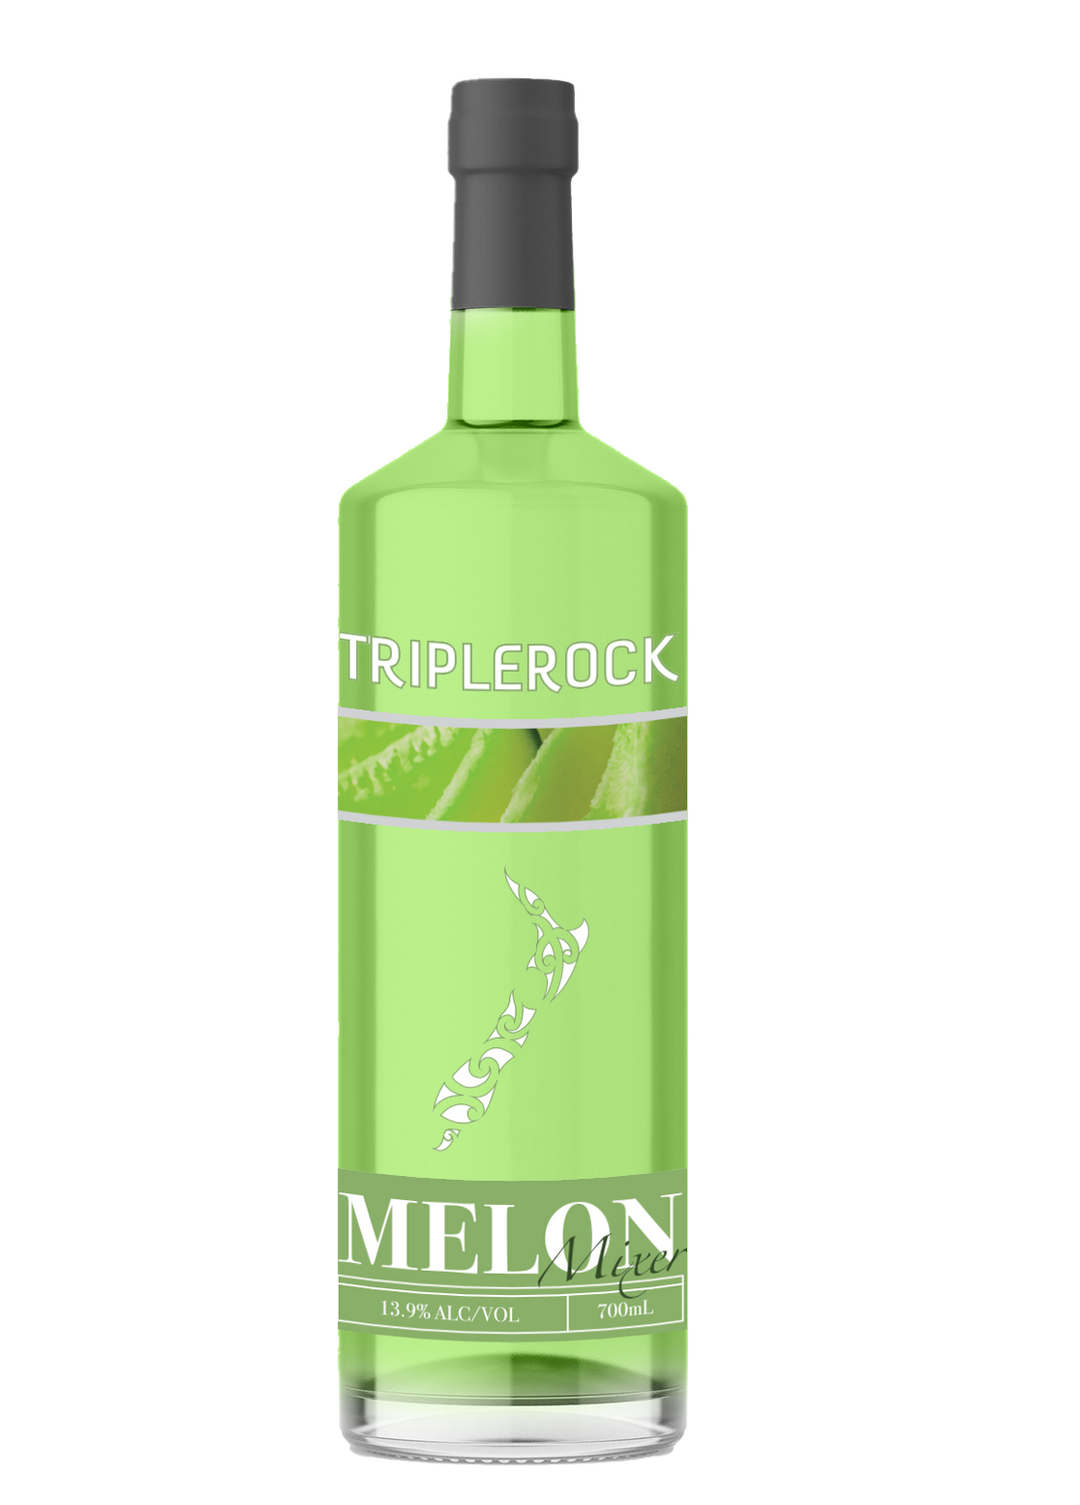 Triplerock Melon Mixer Liqueurs 700ml x6 Bottles 13.9% ALC/VOL.